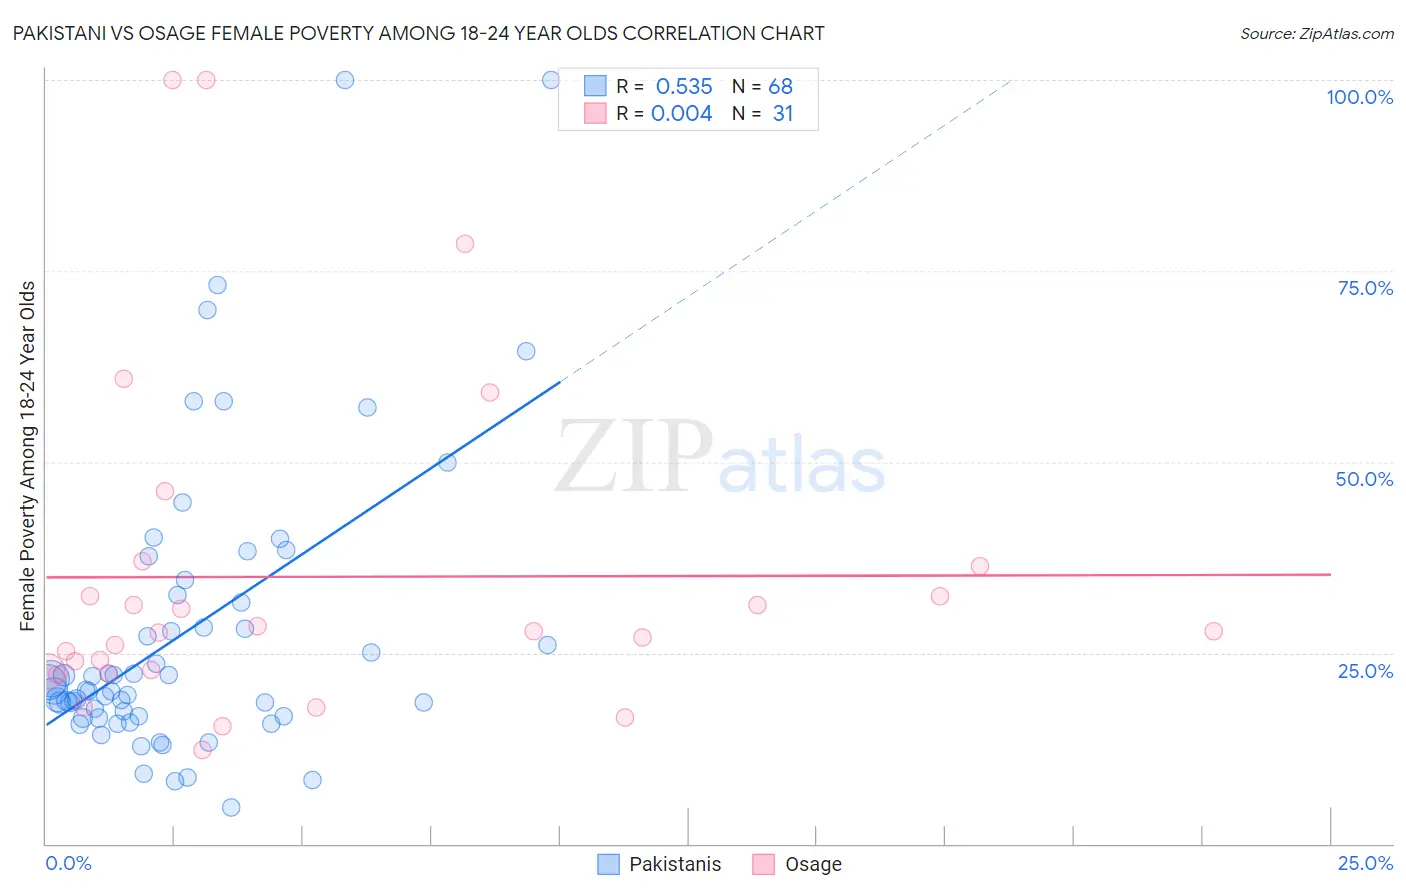 Pakistani vs Osage Female Poverty Among 18-24 Year Olds